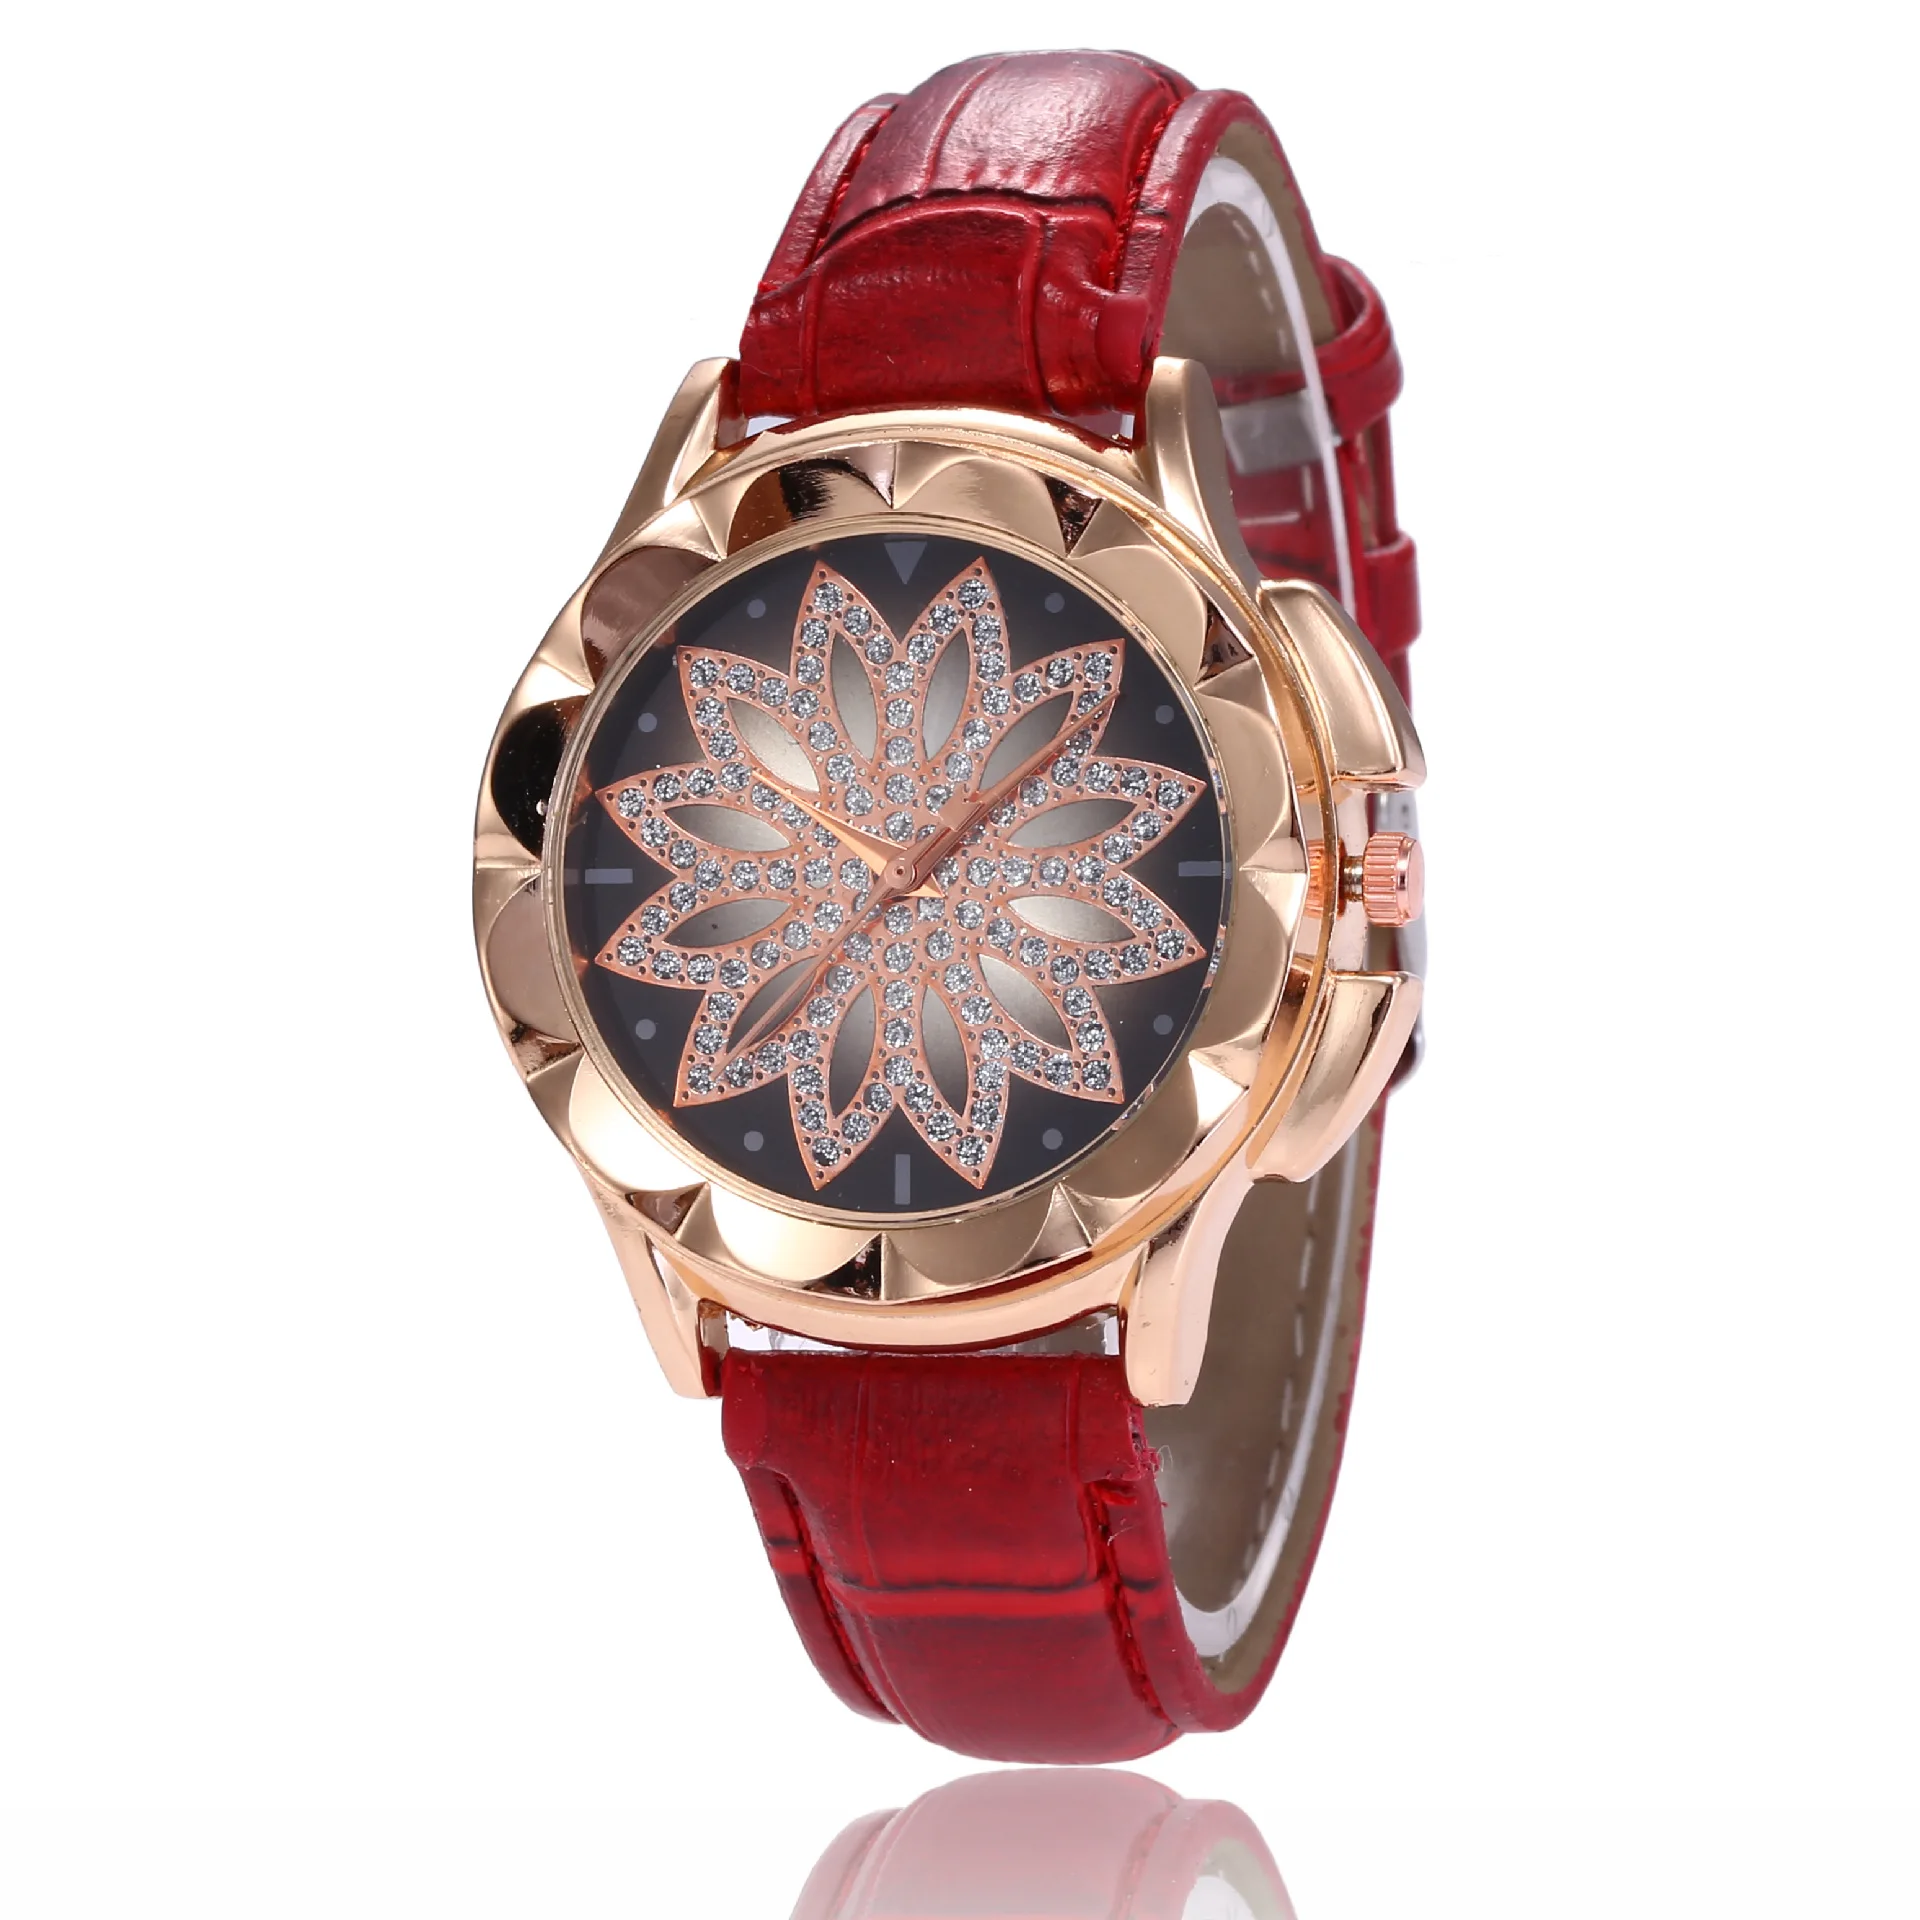 Reloj mujer женские часы лучший бренд женские часы цветок из розового золота горный хрусталь femme женские наручные часы relogio feminino